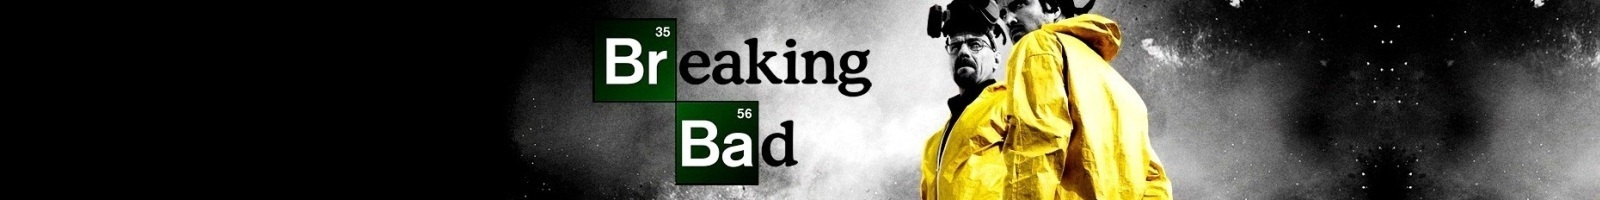  'Breaking Bad' Banner